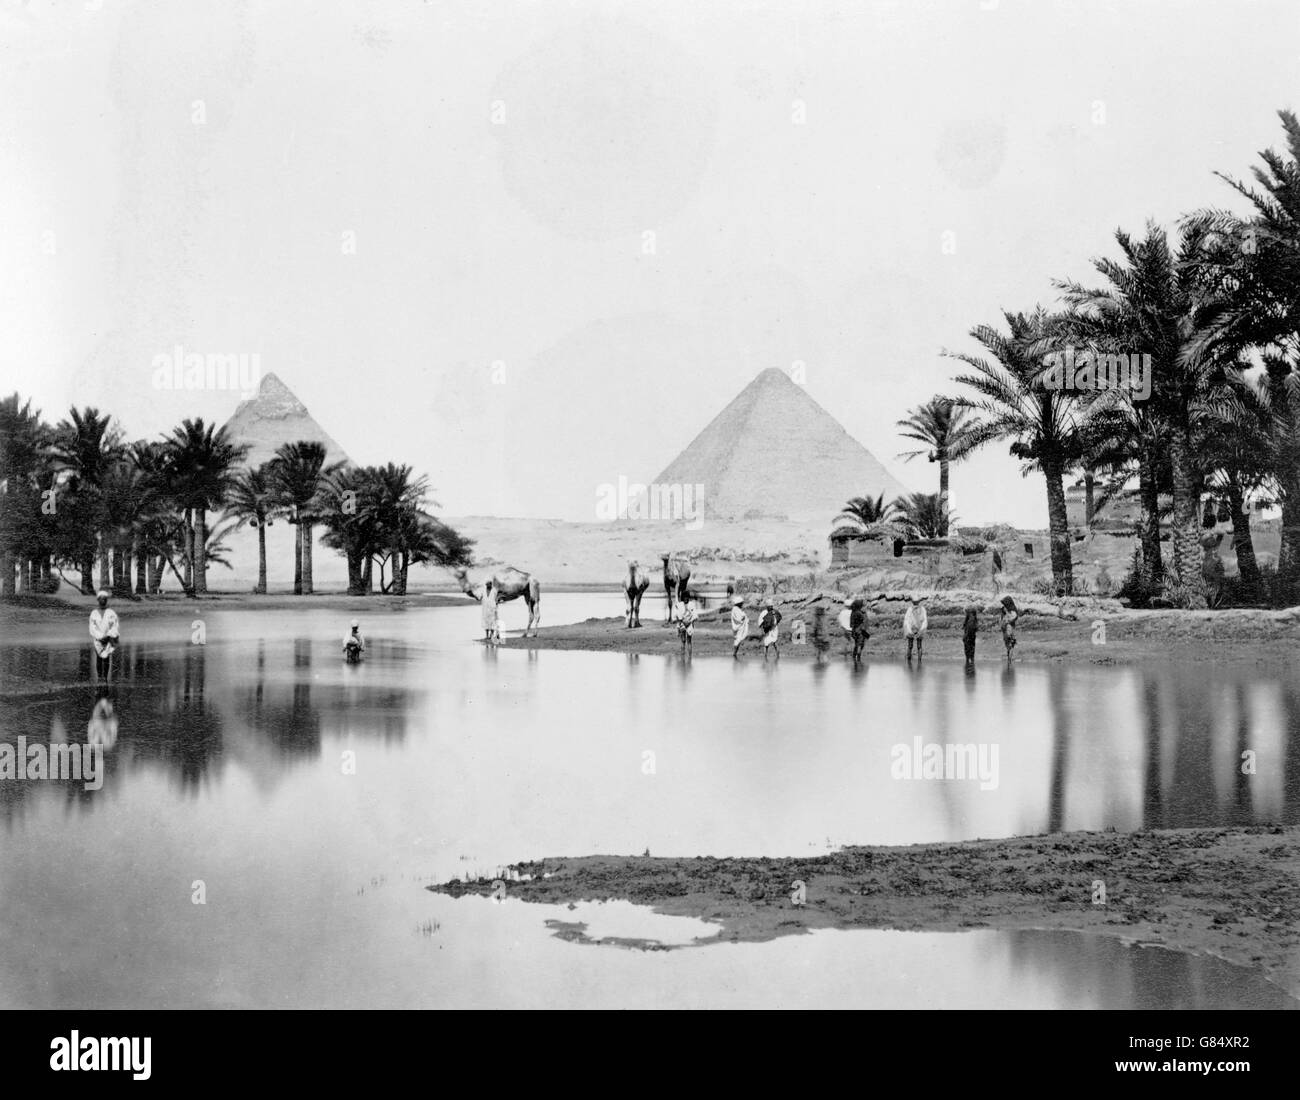 Le Piramidi di Giza in metà alla fine del XIX secolo. Foto scattata tra 1860 e 1890. Foto Stock